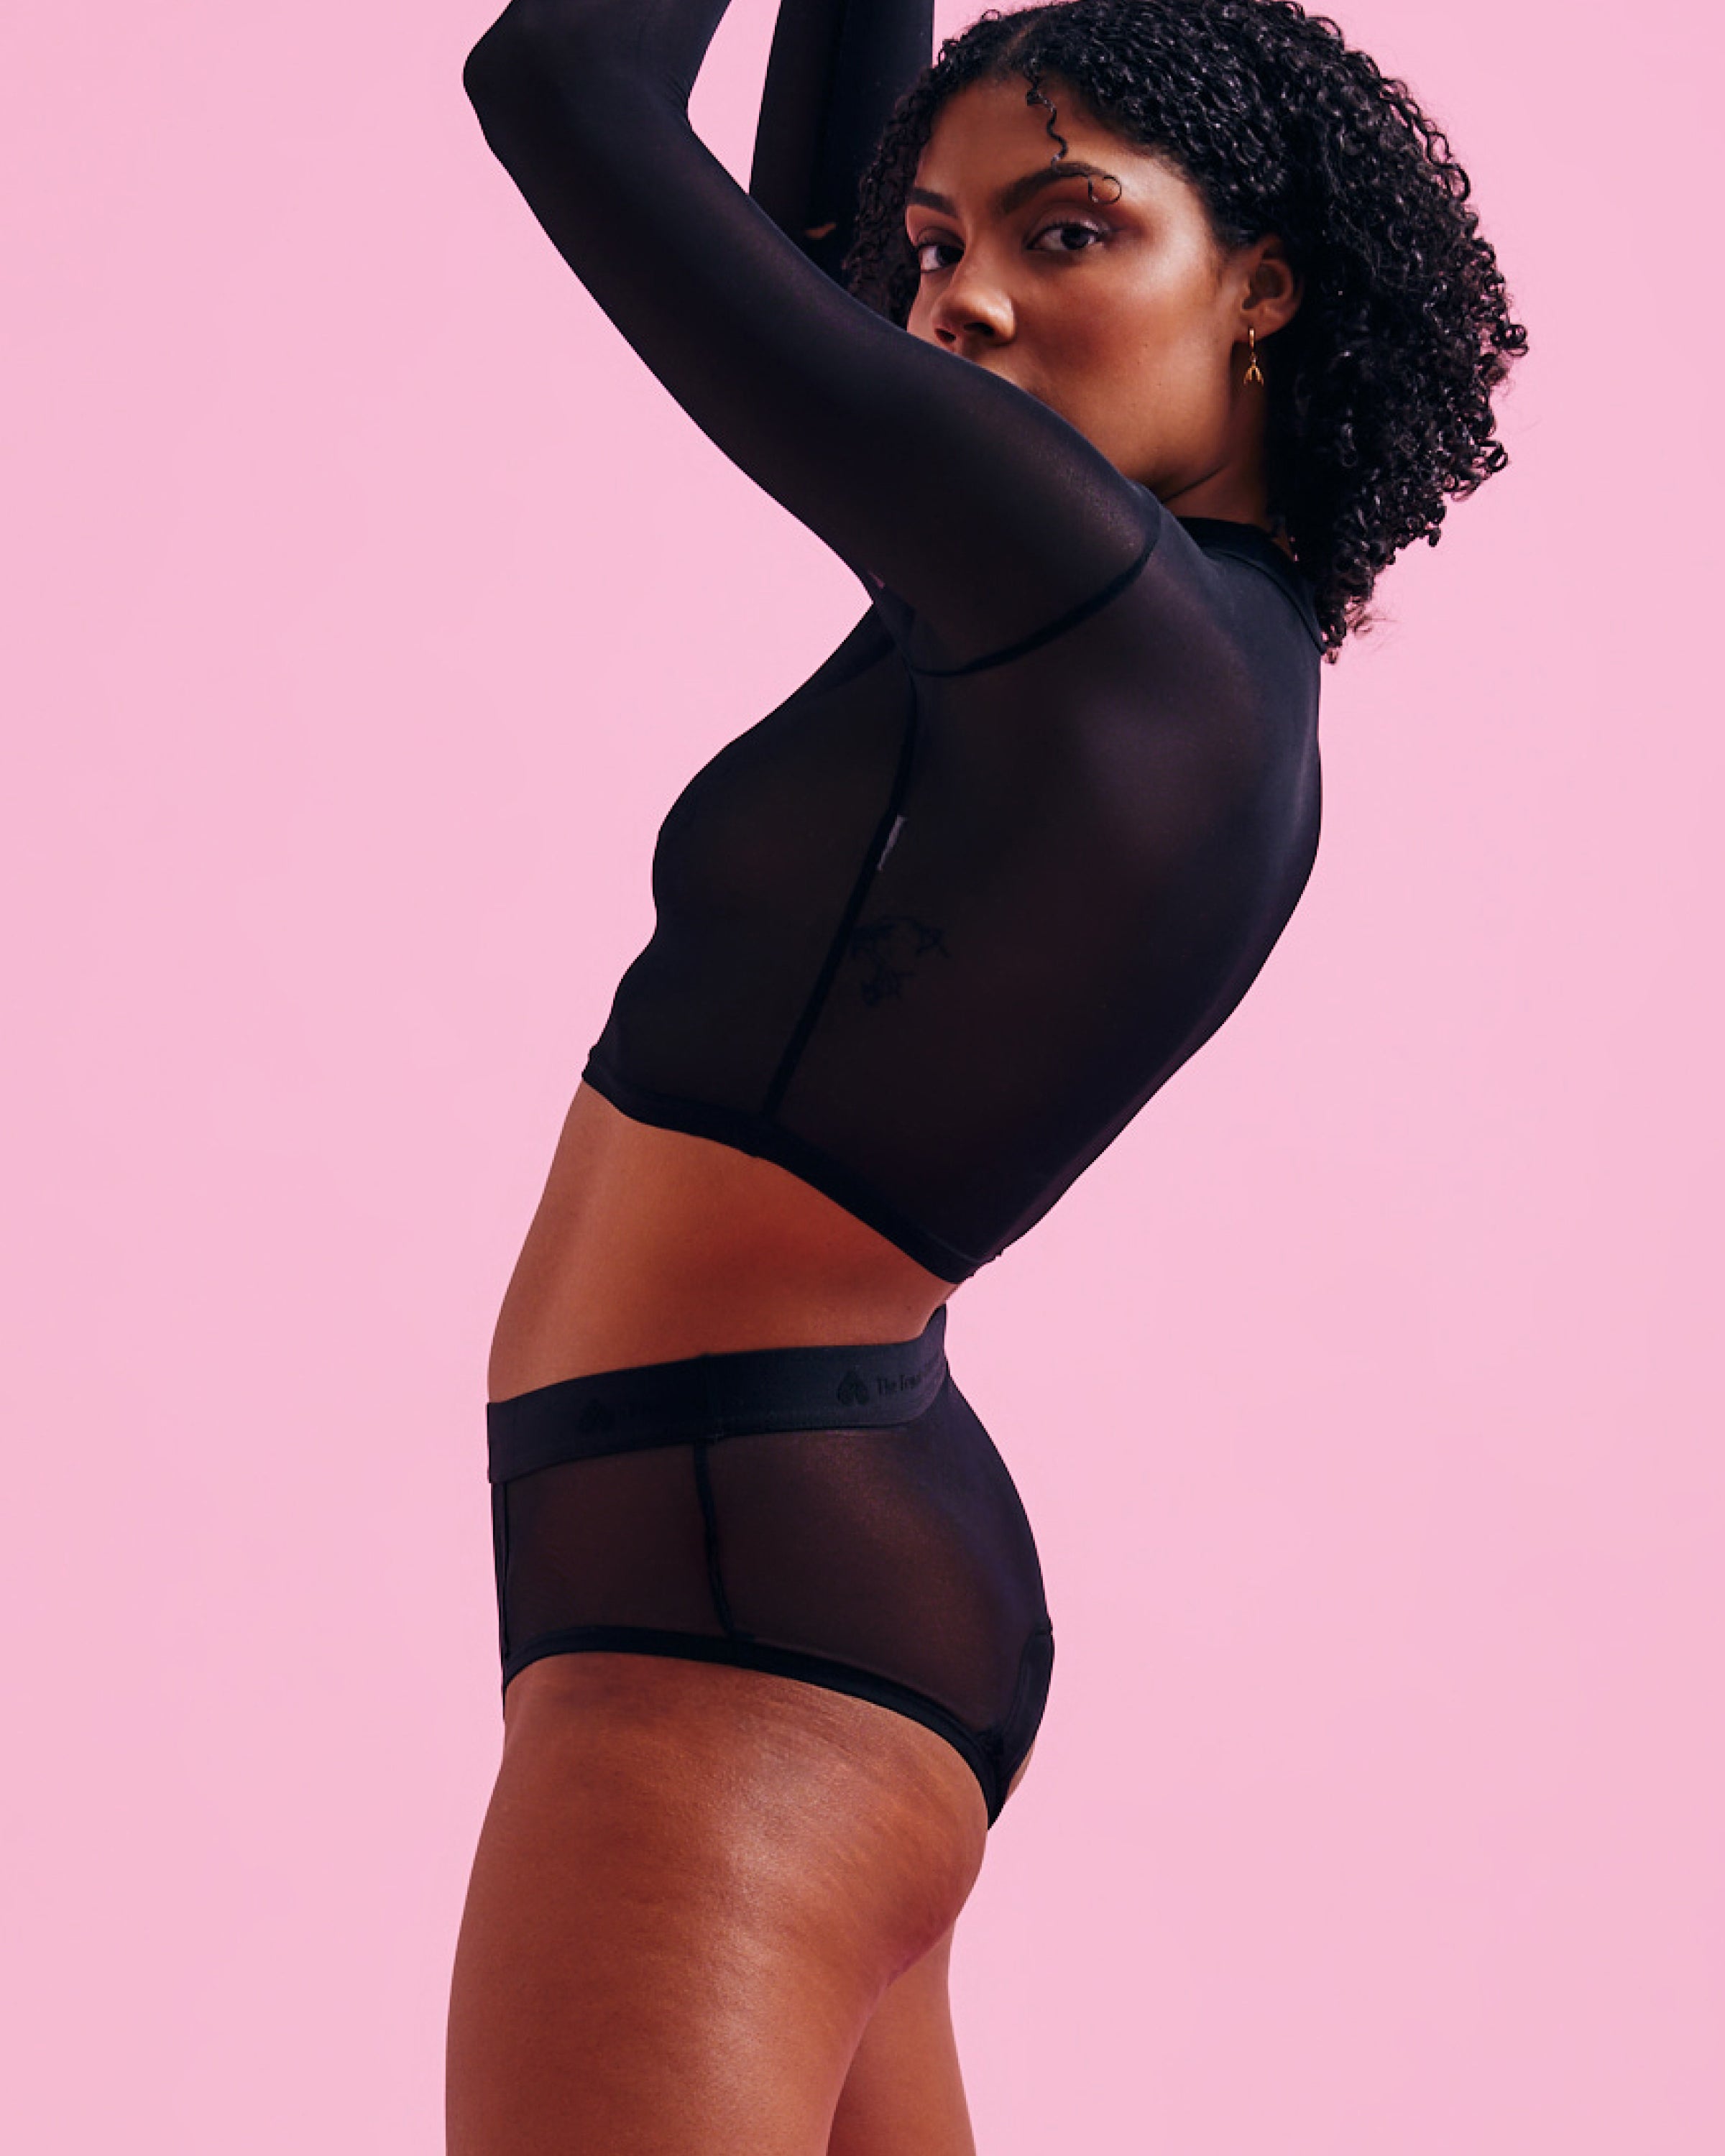 Period underwear Hipster black mesh shop online